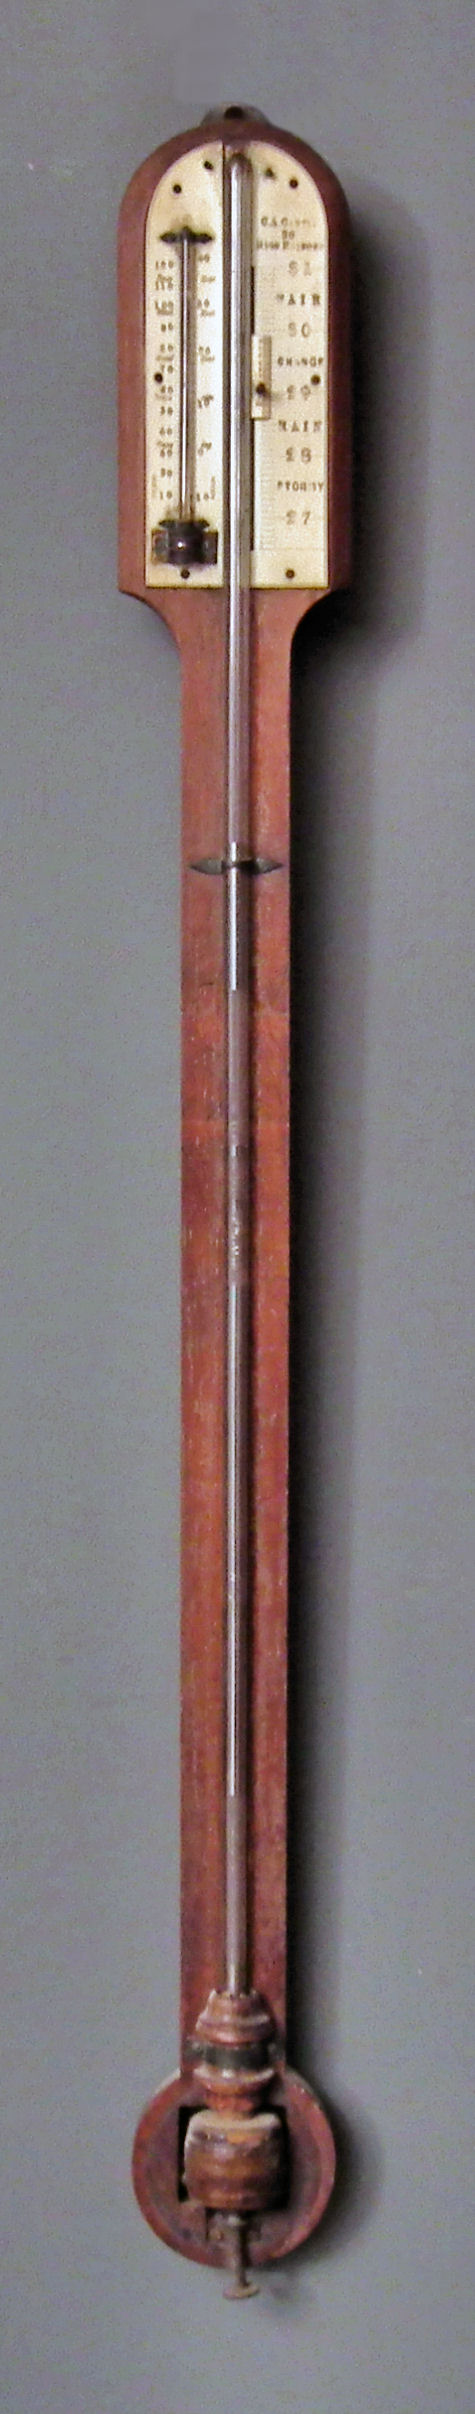 A 19th Century mahogany stick barometer